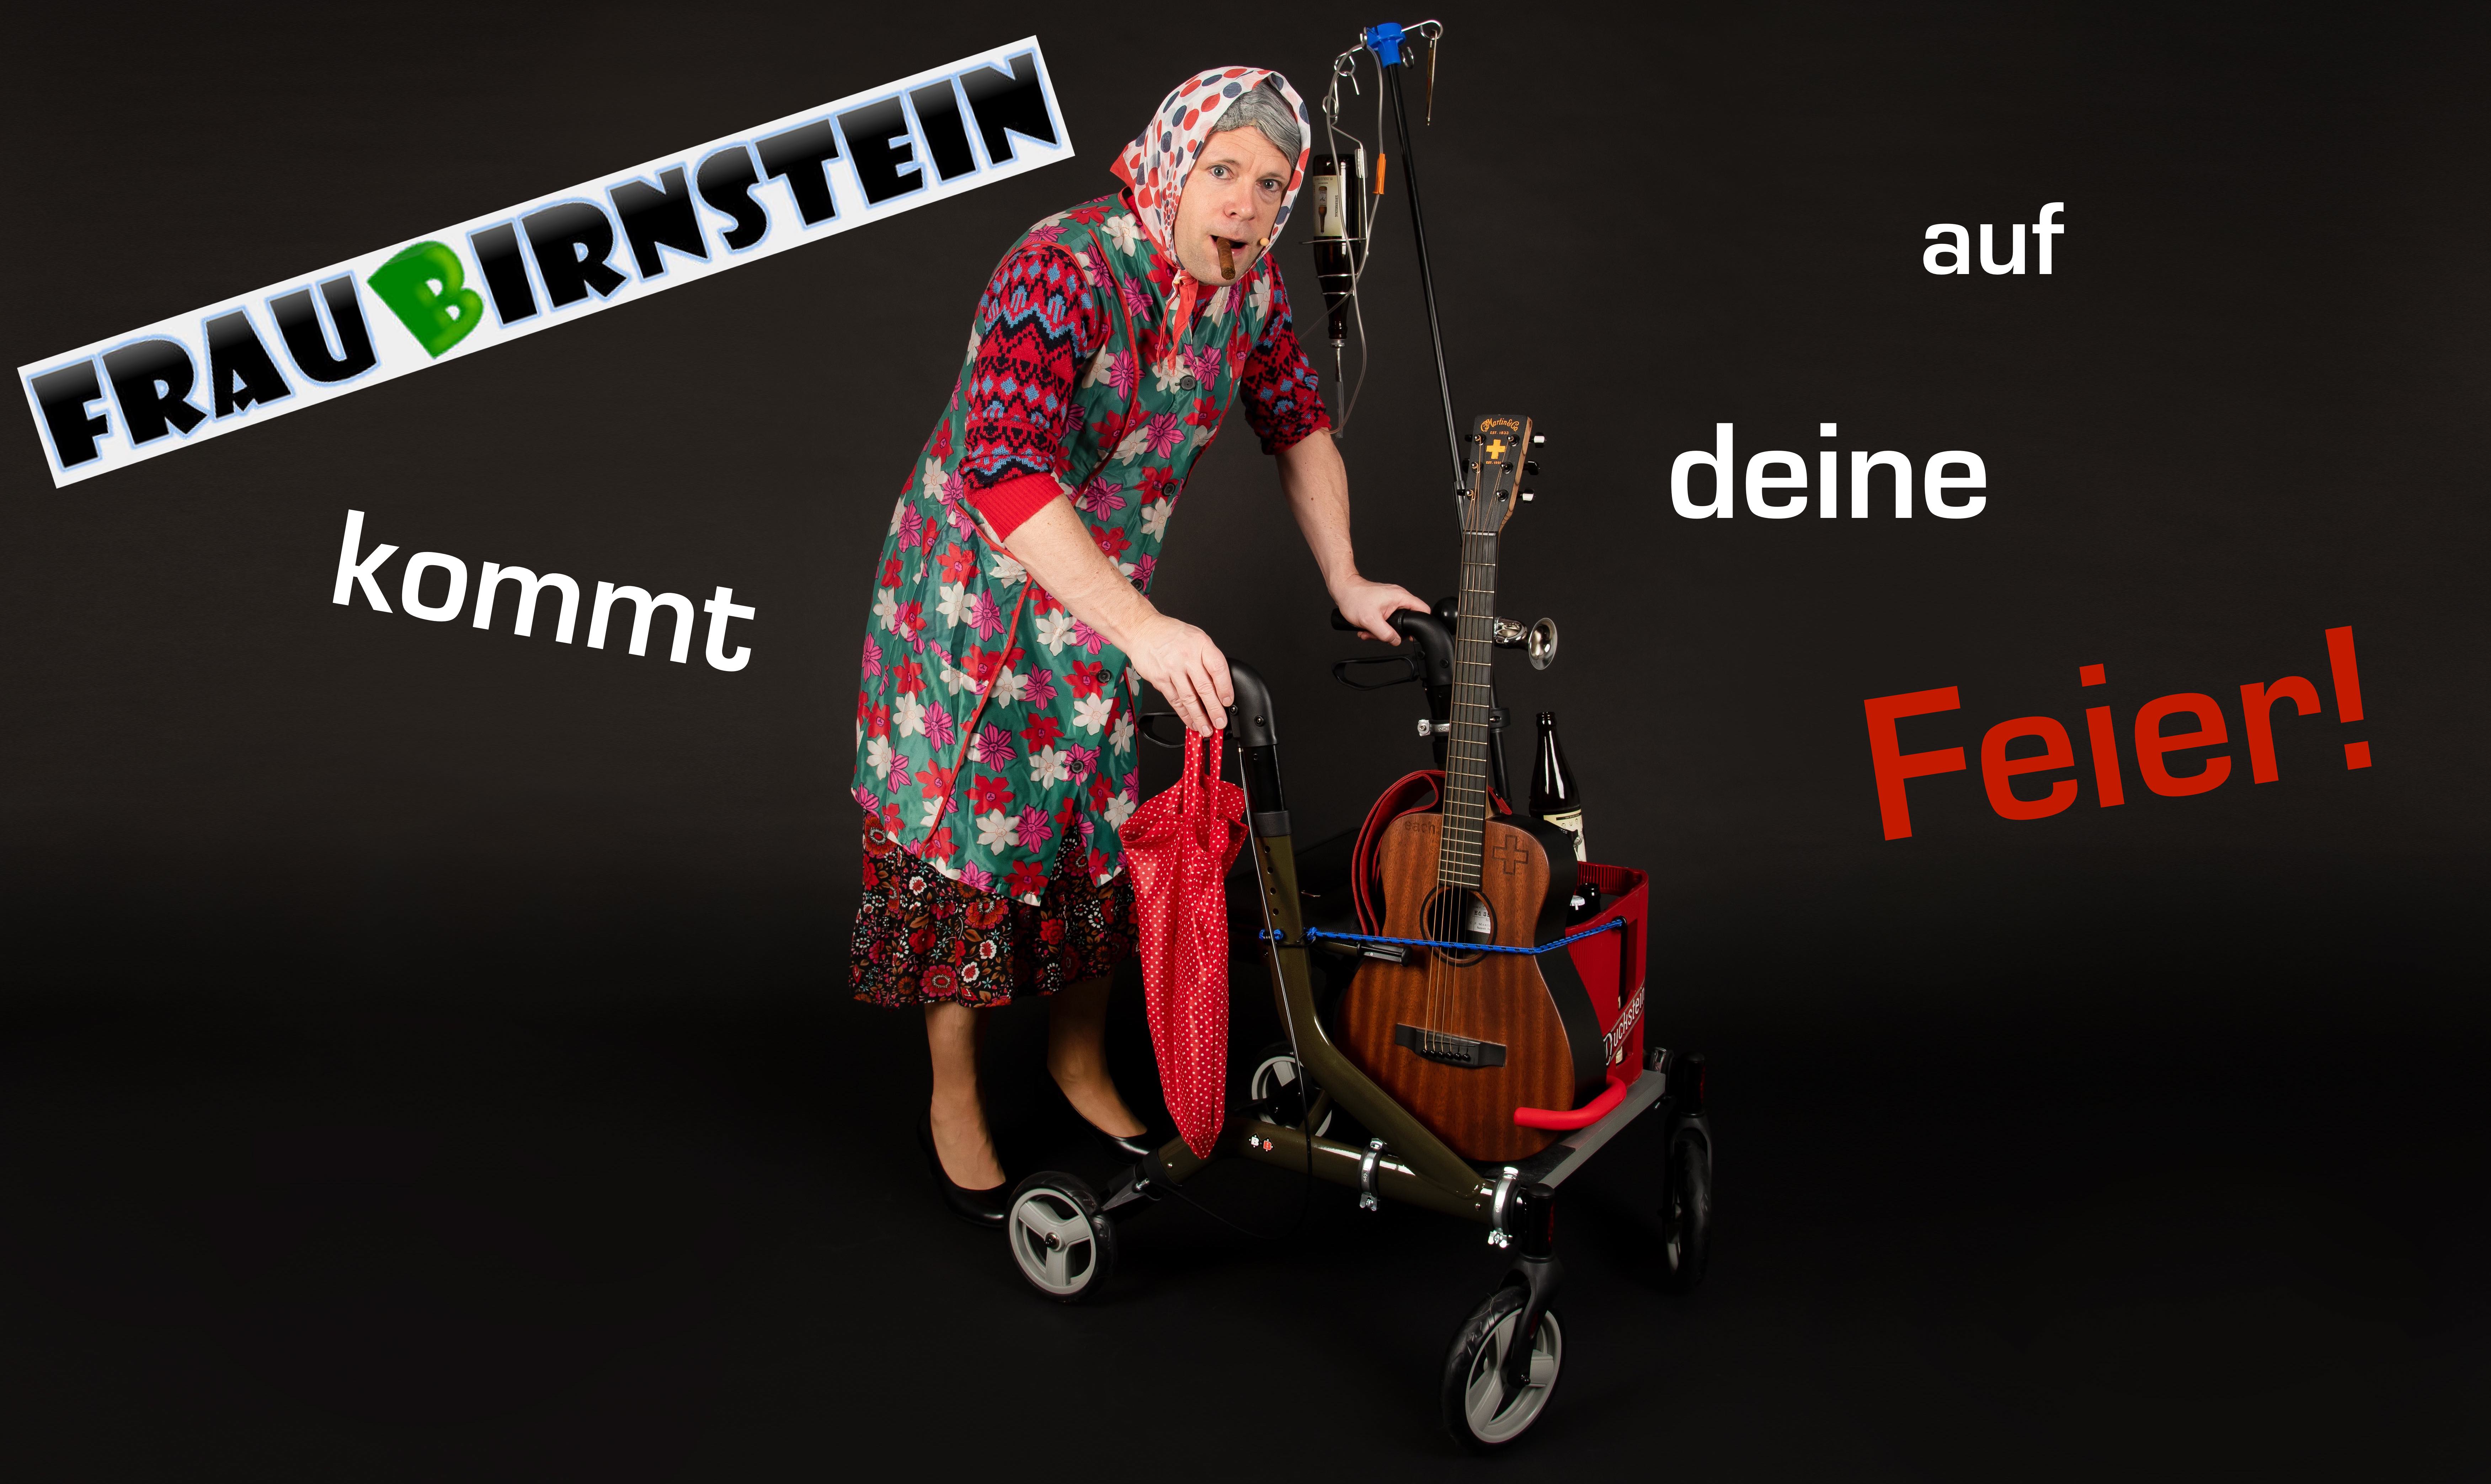 Frau Birnstein